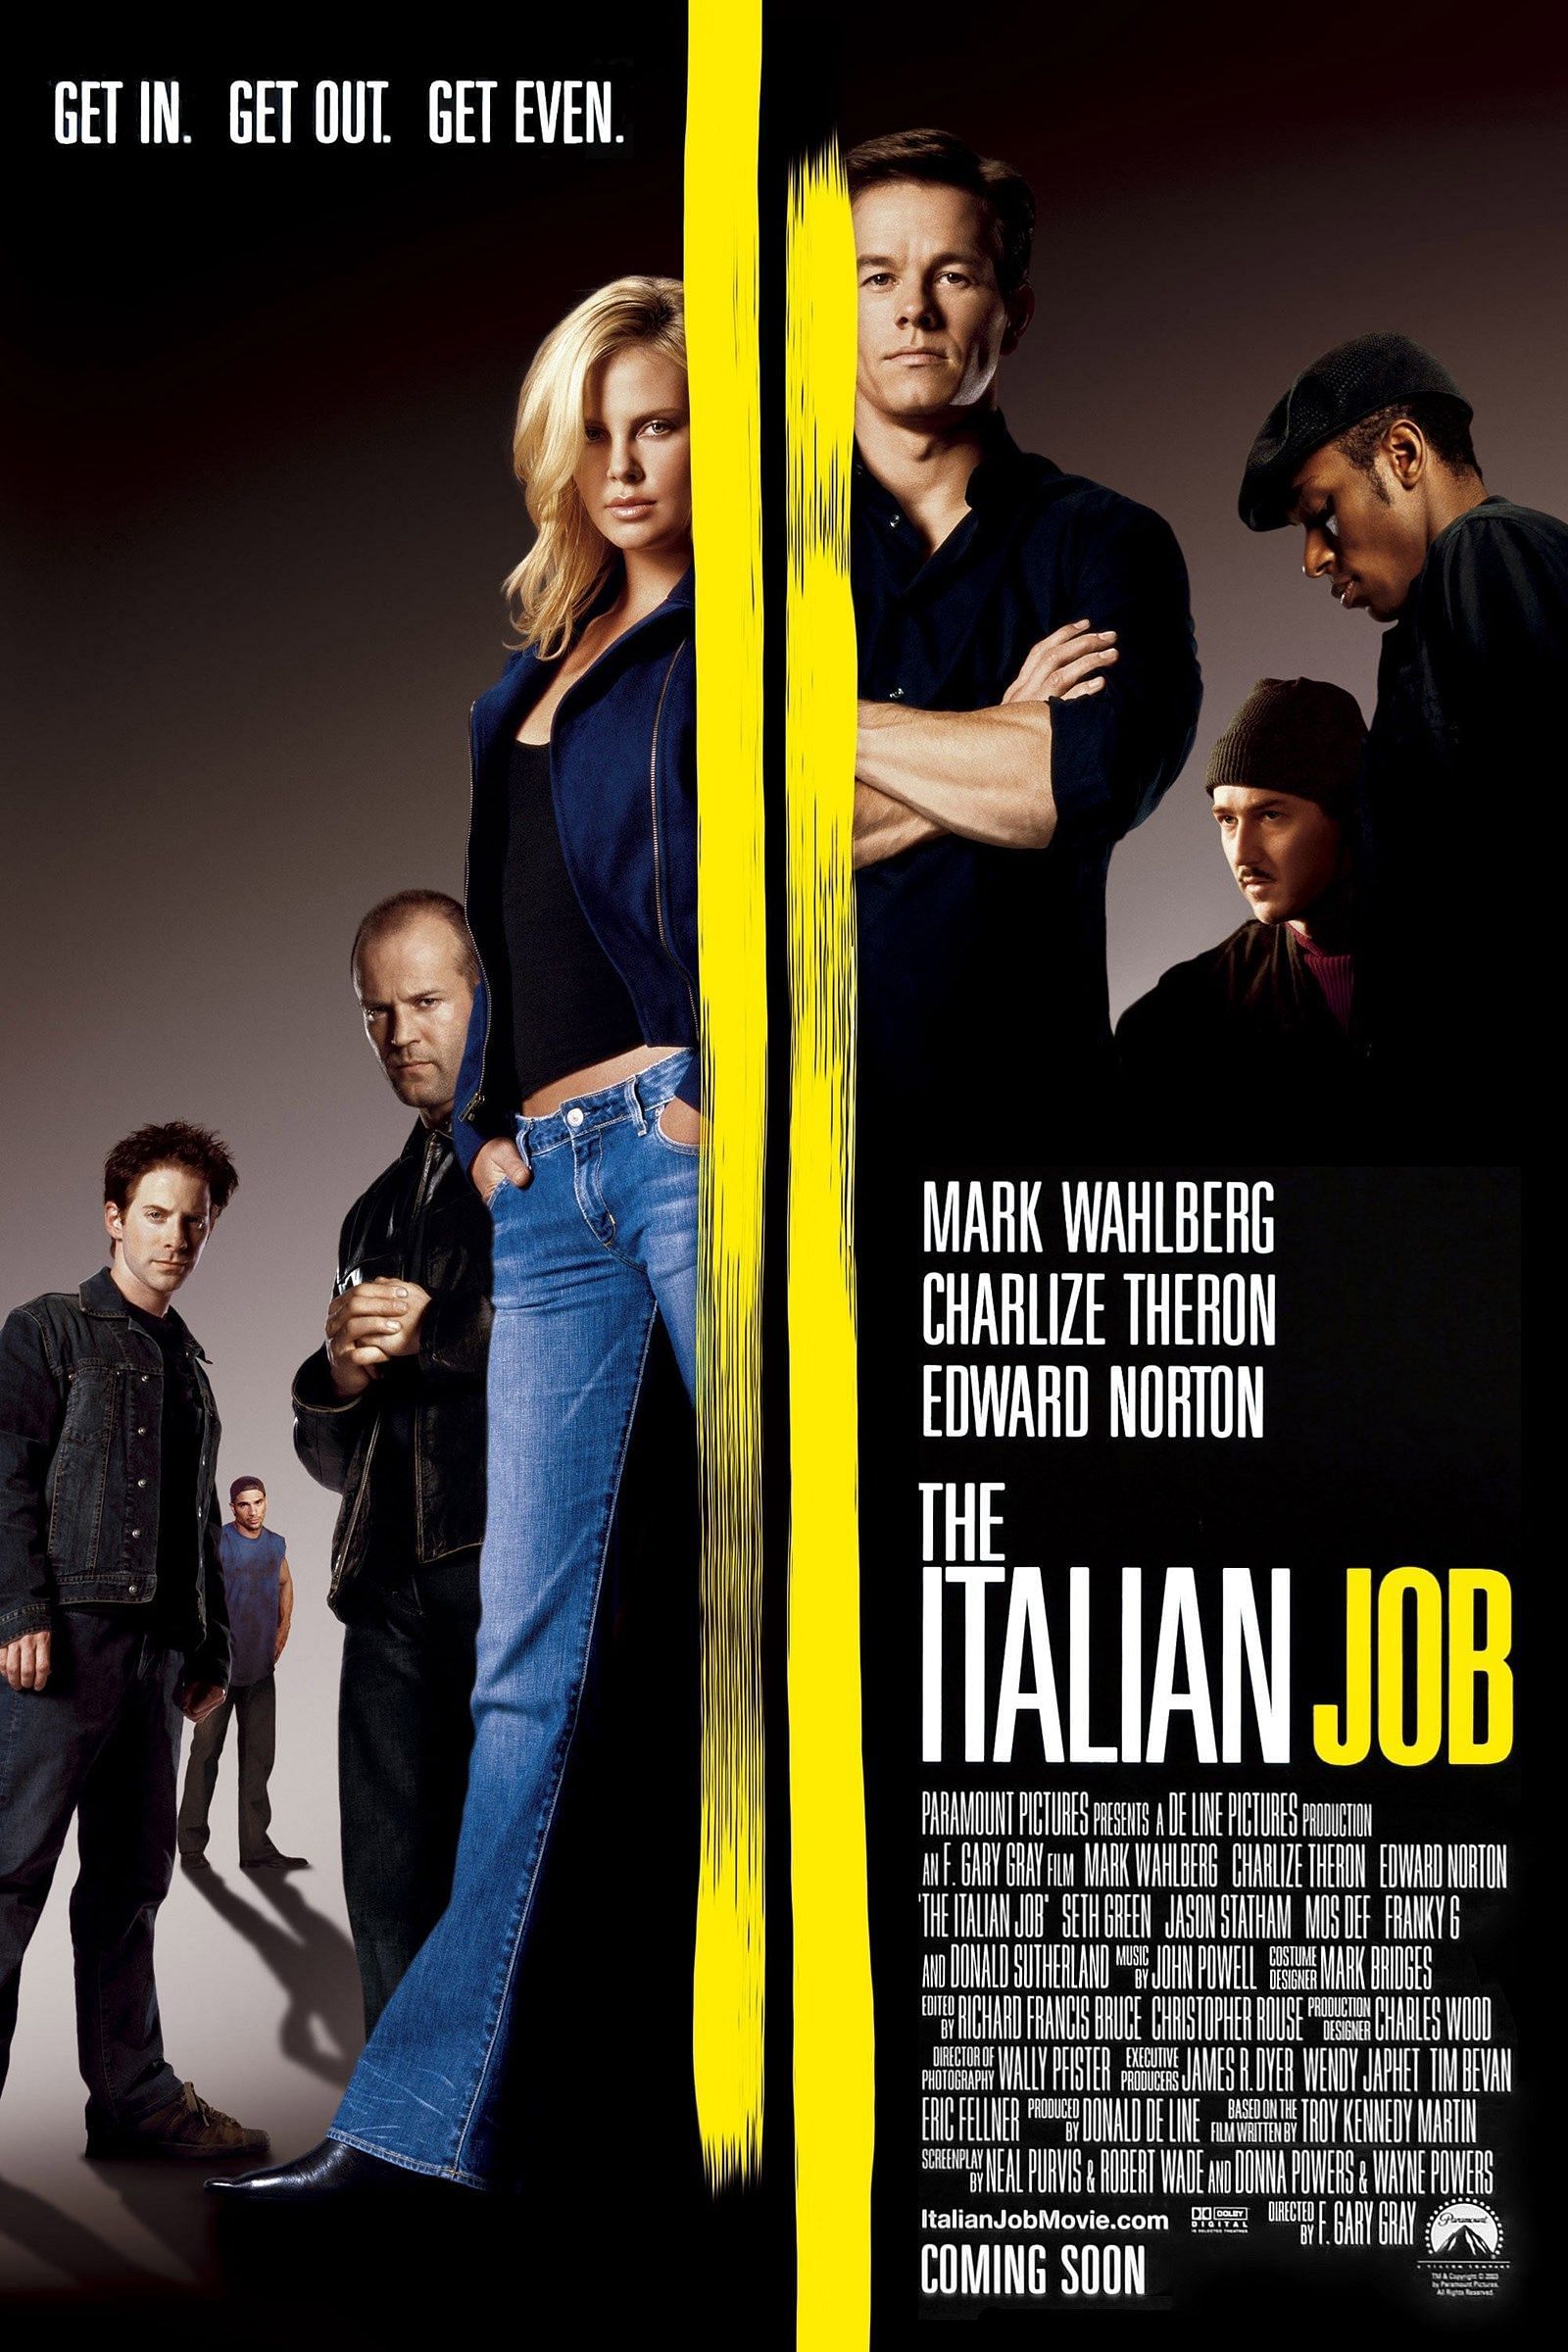 The Italian Job (Image via Paramount)